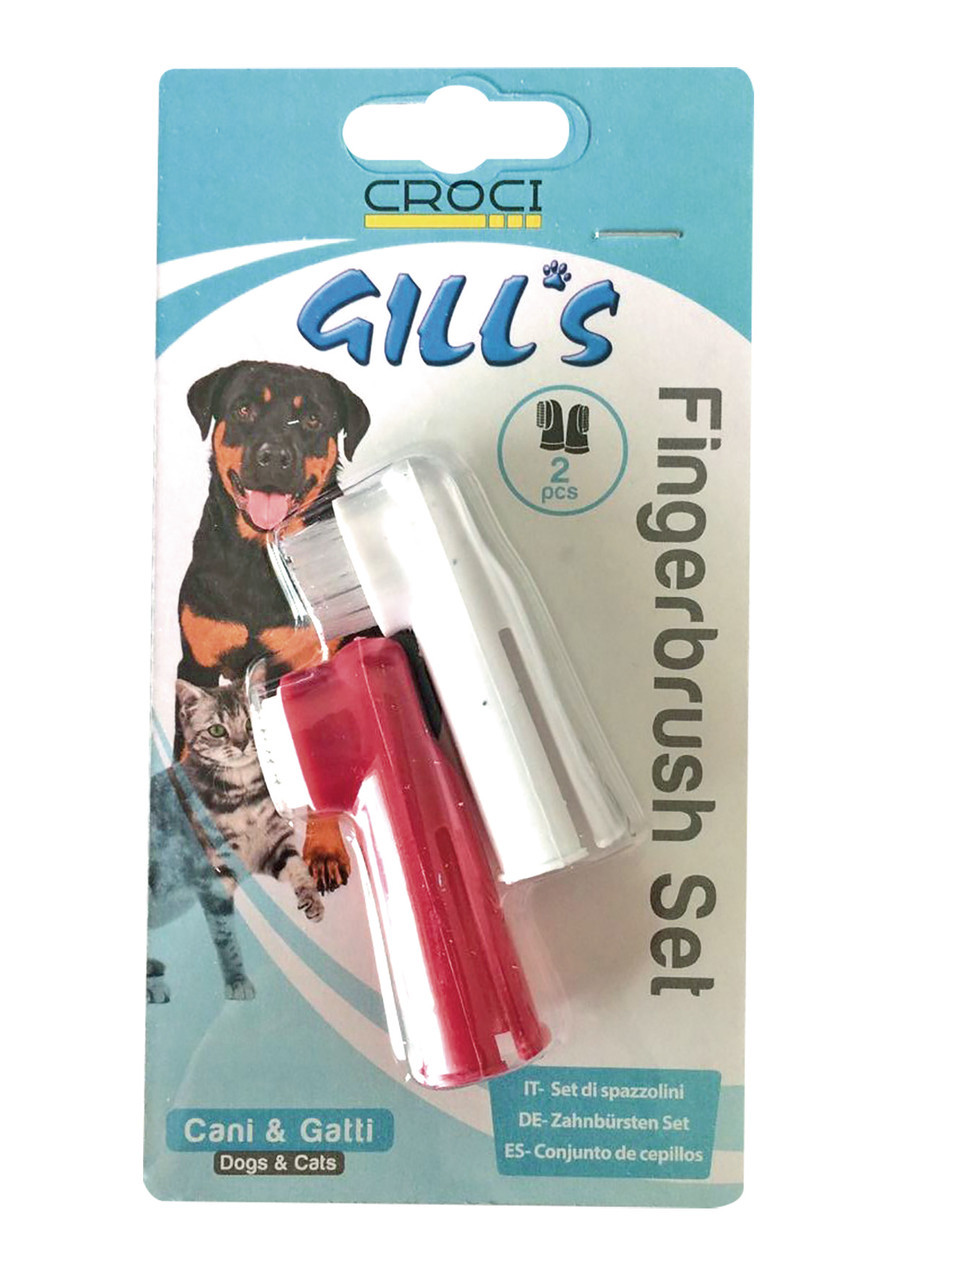 Photos - Dog Cosmetic Croci Зубные щетки  Gills, 2 щетки в наборе  (168039)